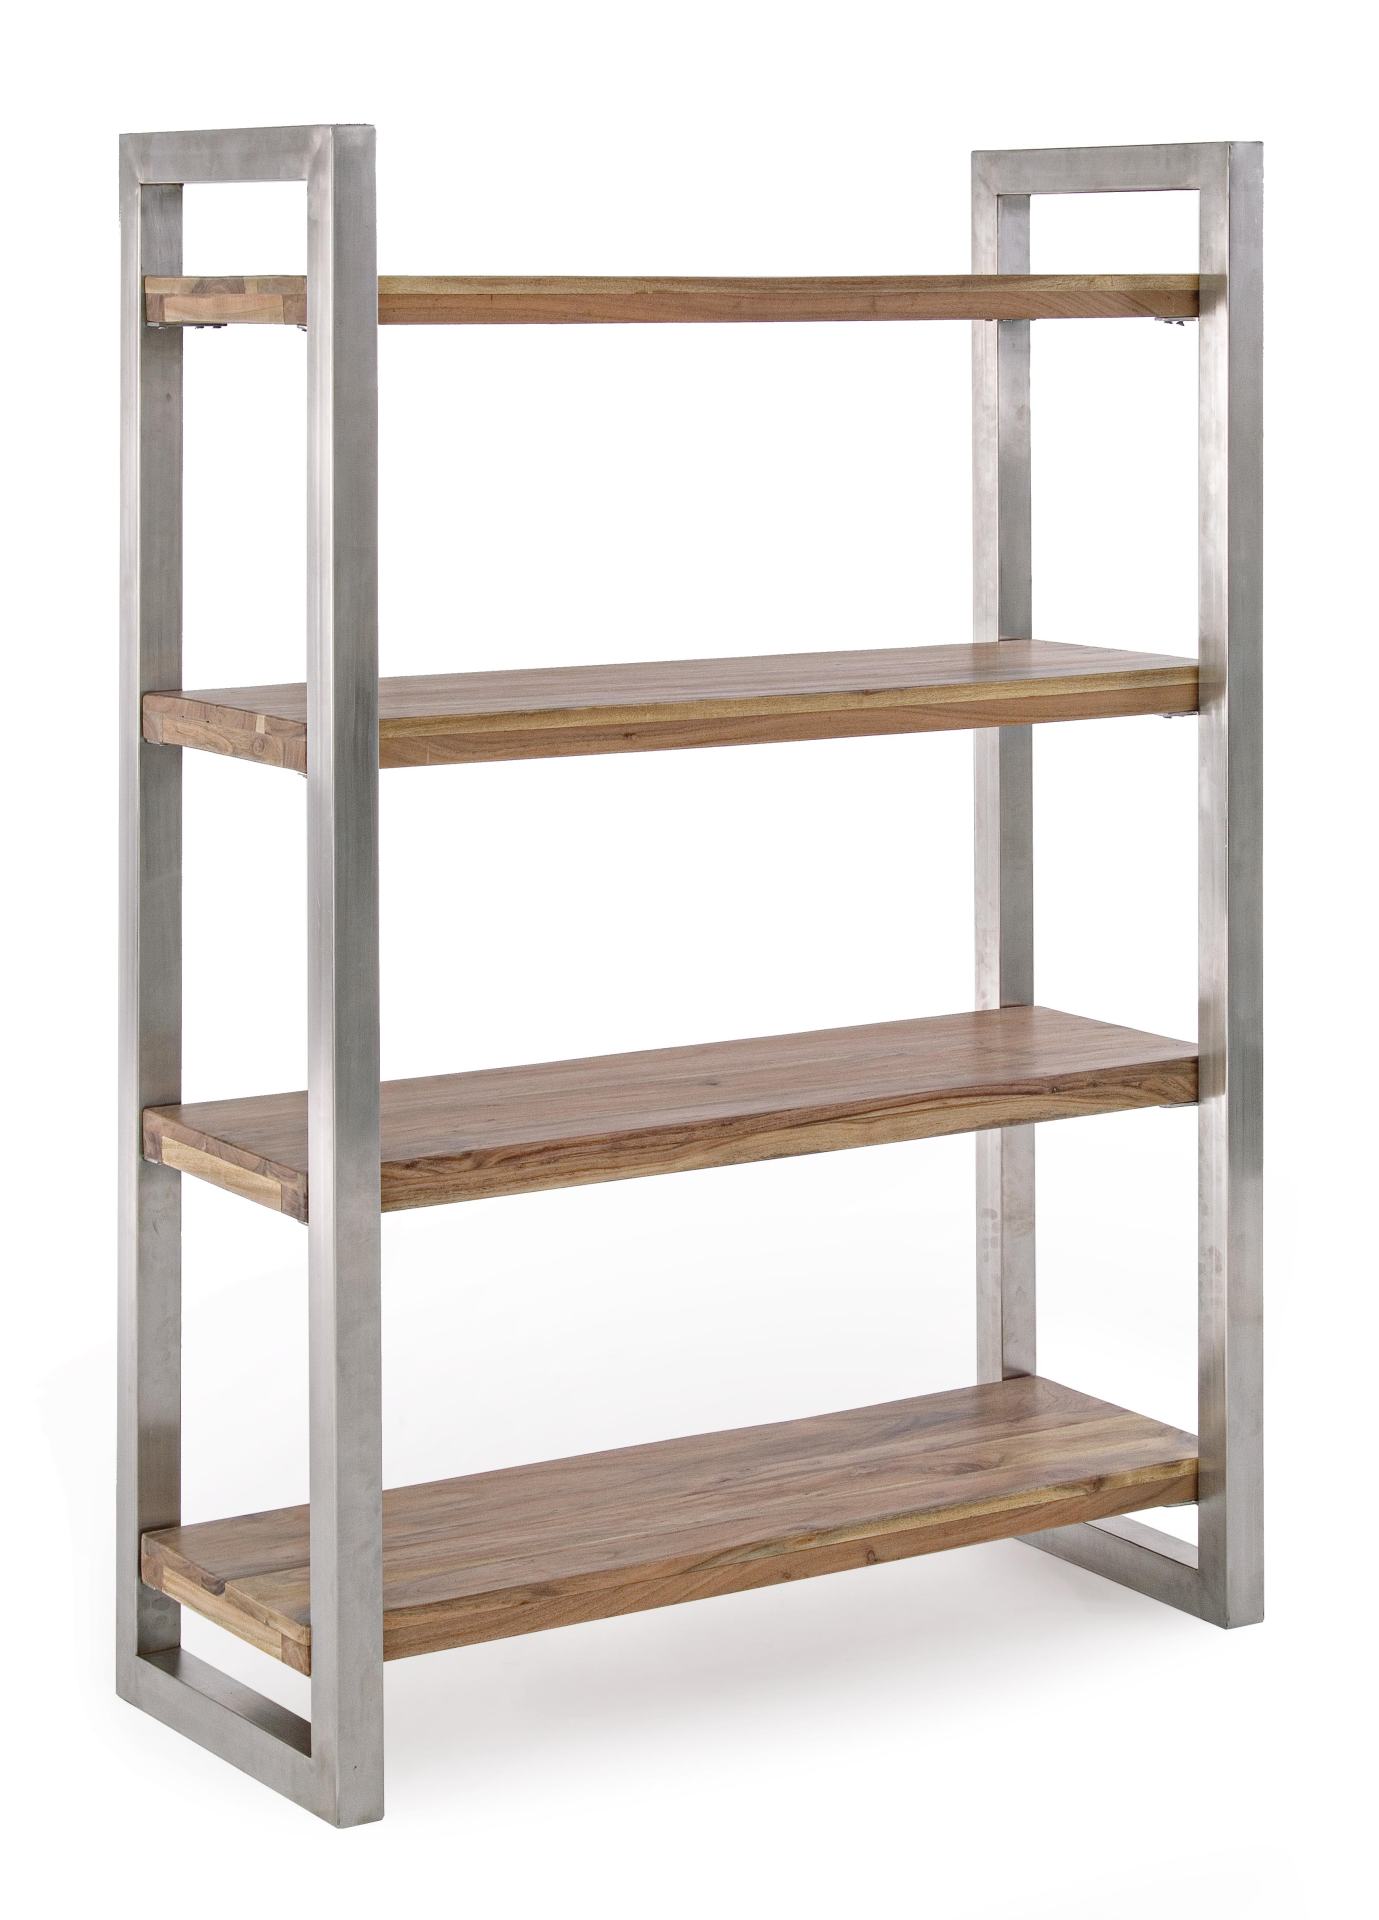 Das Bücherregal Osbert überzeugt mit seinem klassischen Design. Gefertigt wurde es aus Akazienholz, welches einen natürlichen Farbton besitzt. Das Gestell ist aus Metall und hat eine silberne Farbe. Das Bücherregal verfügt über drei Fächer. Die Breite bet